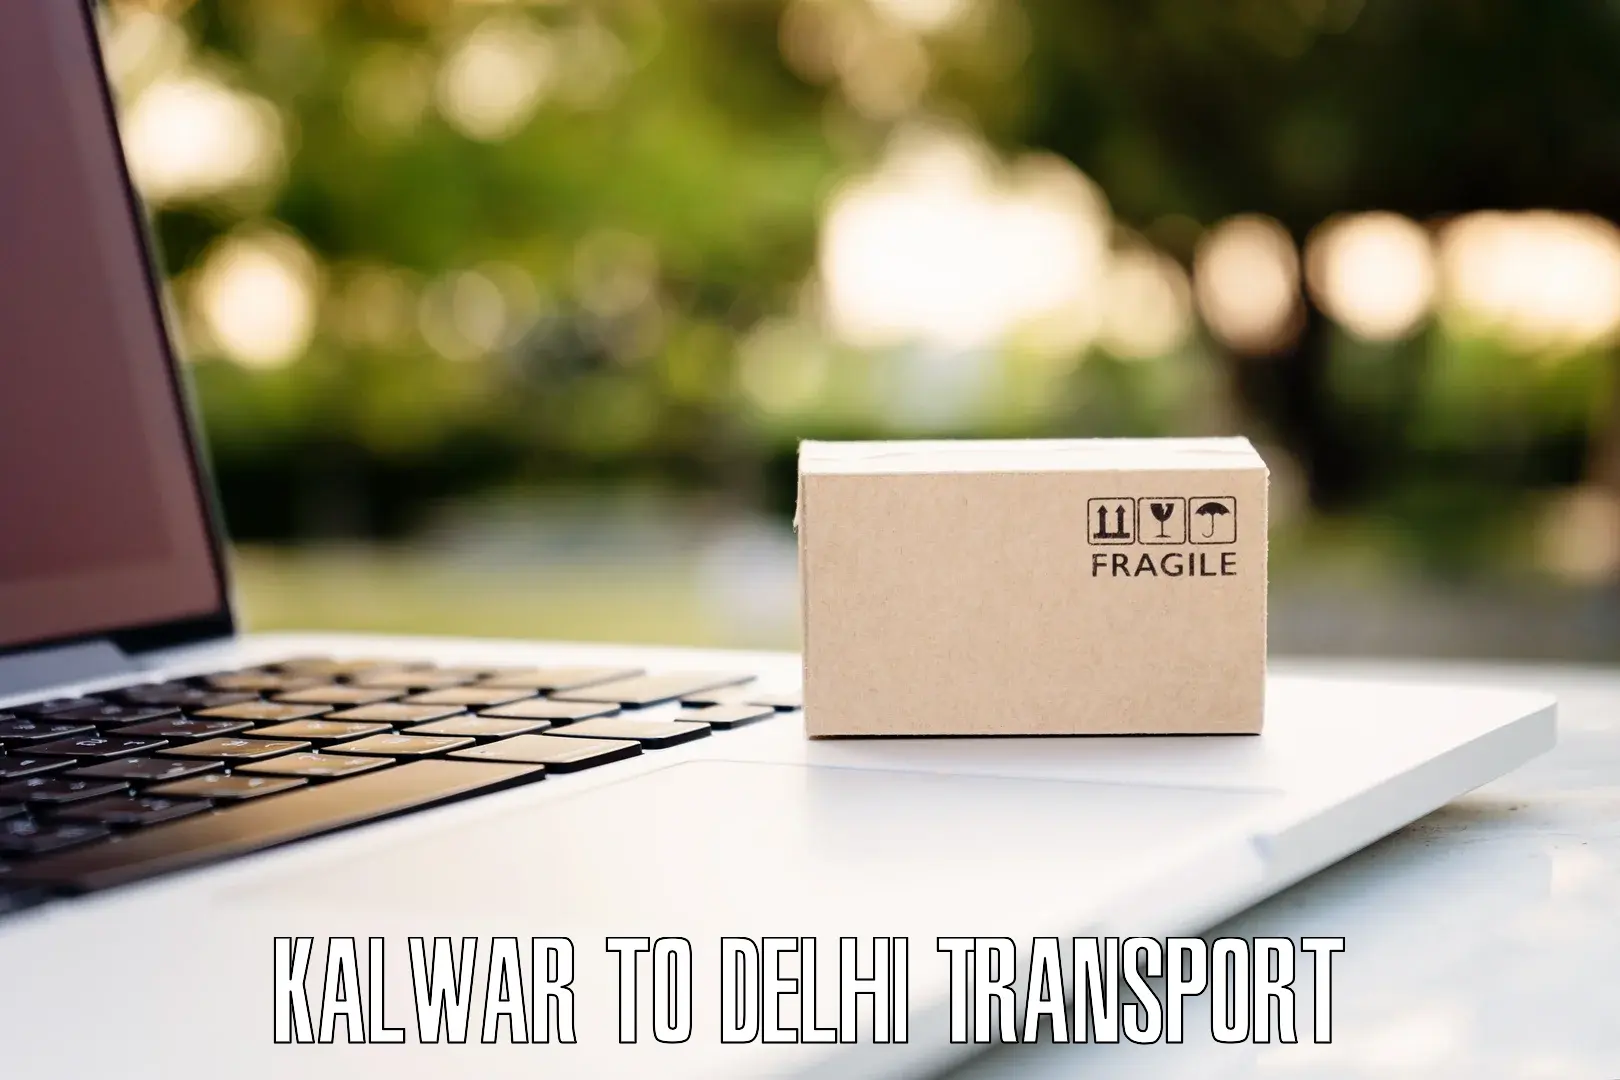 Express transport services Kalwar to Delhi